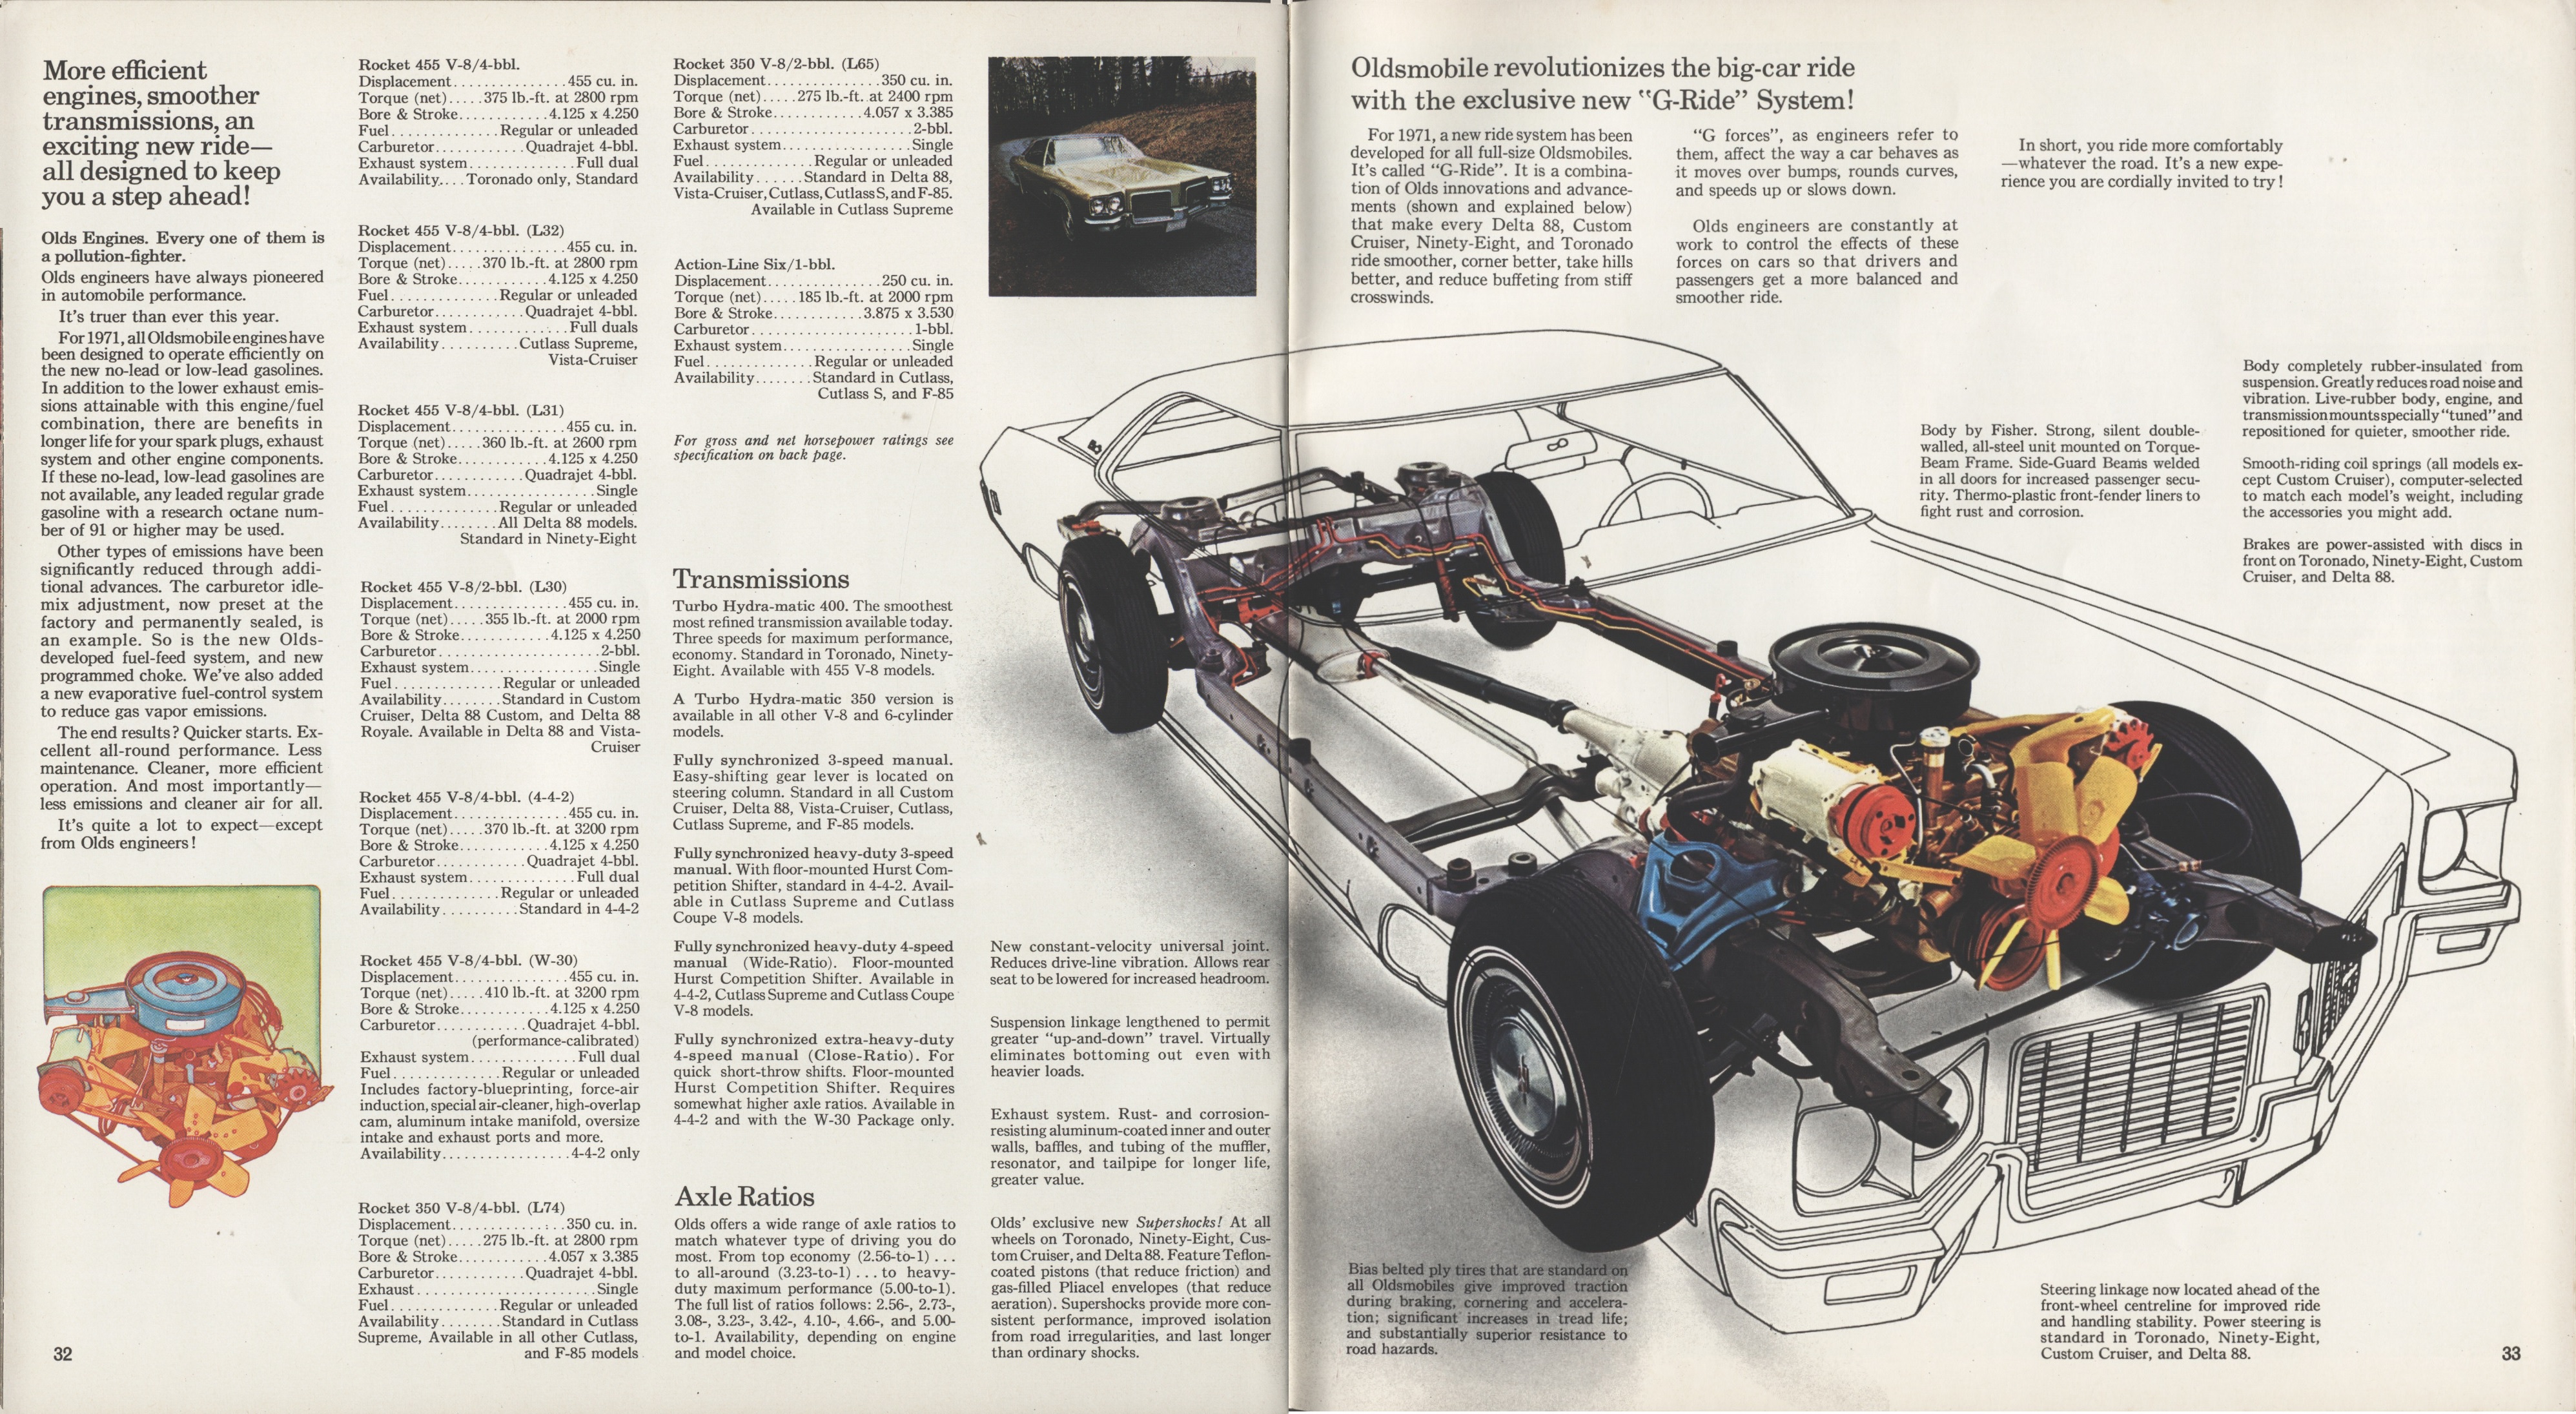 1971 Oldsmobile Full Line Brochure (Cdn) 32-33